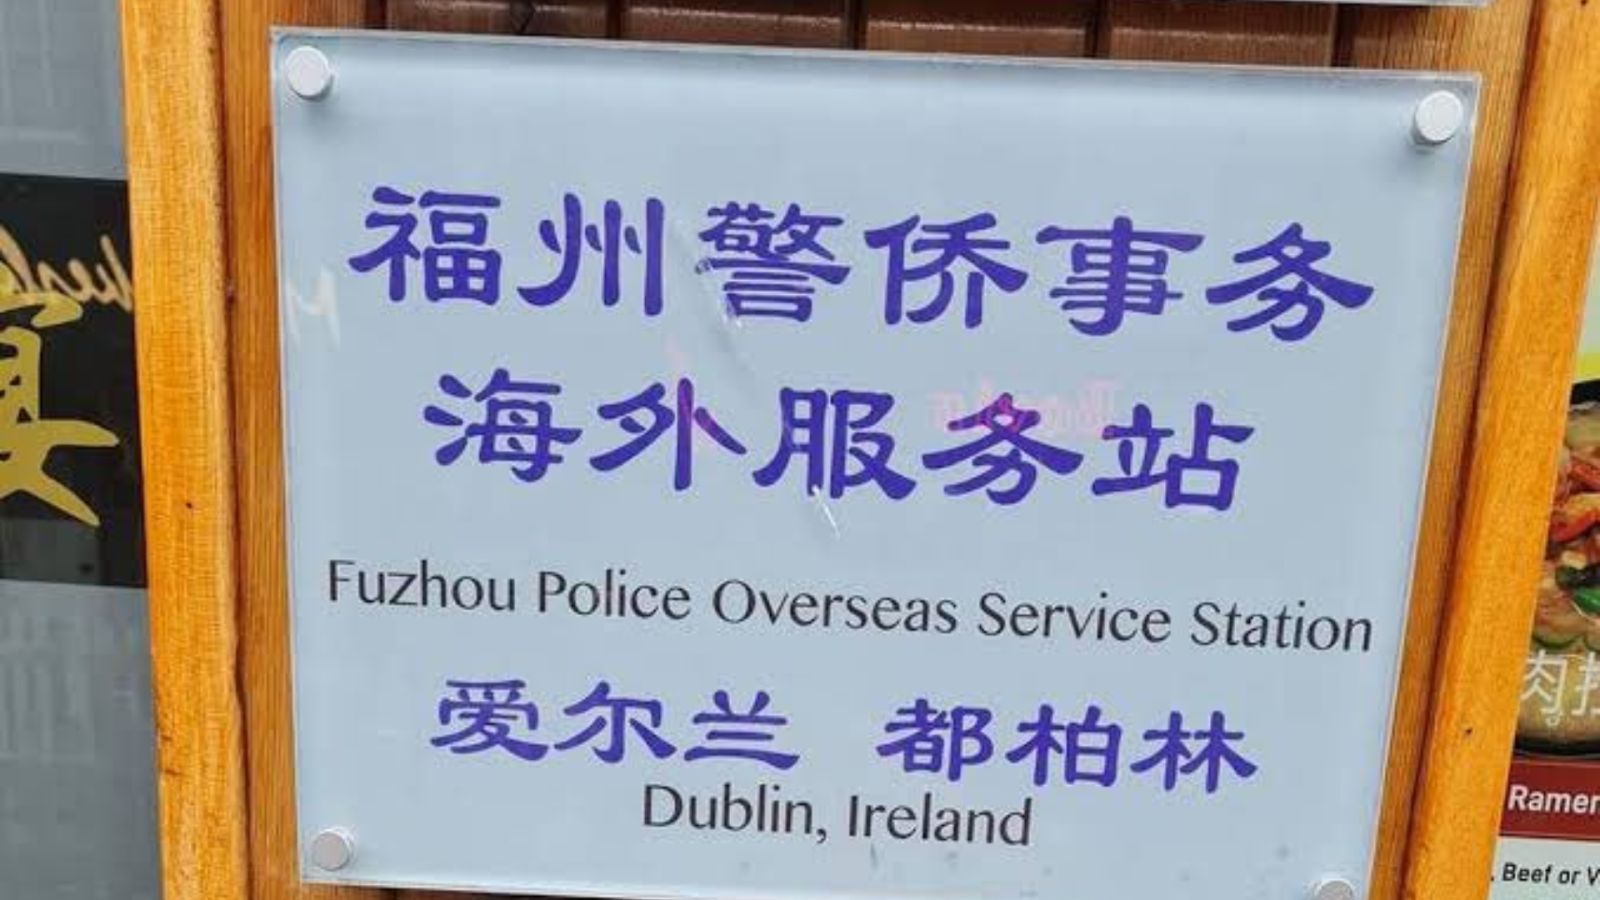 中國福建省福州市警察局設在愛爾蘭的站點。翻攝@Jerry00107966推特